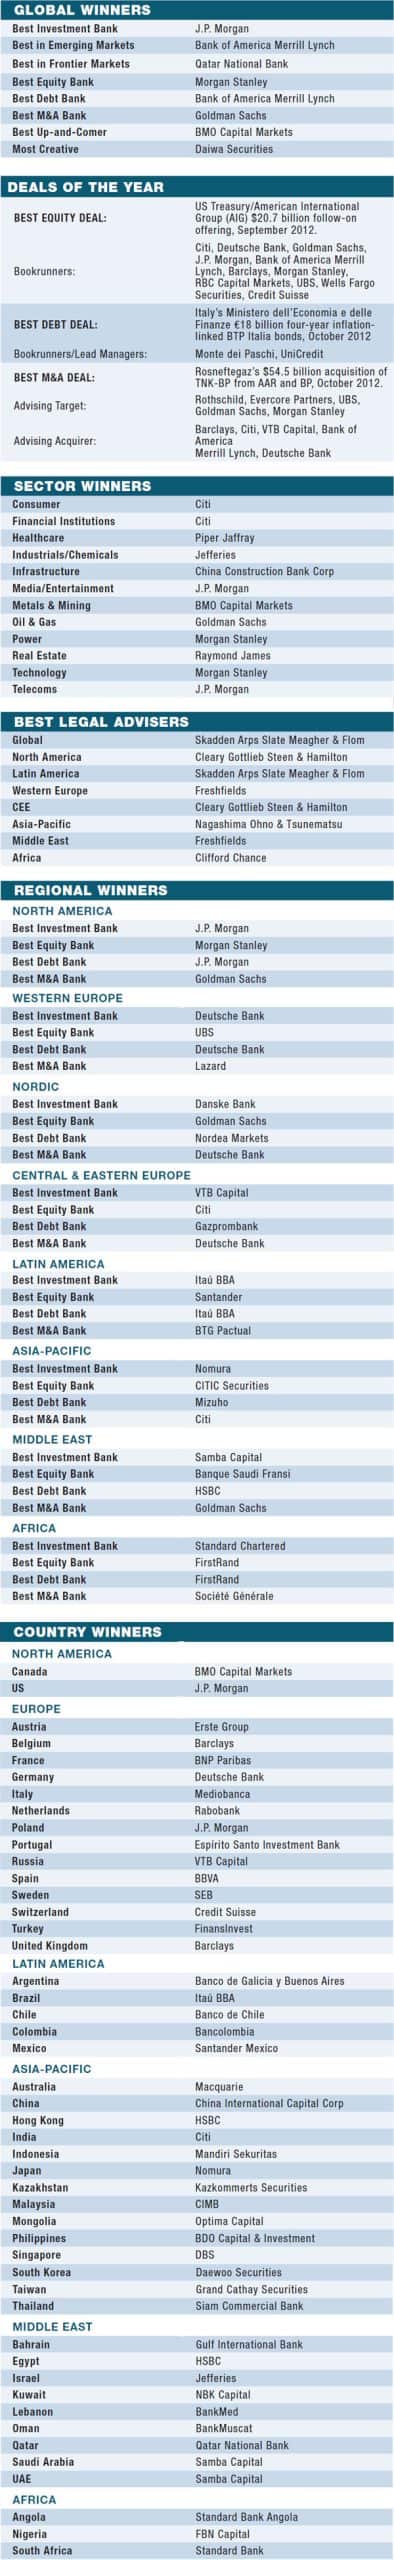 08g-world-best-investment-banks